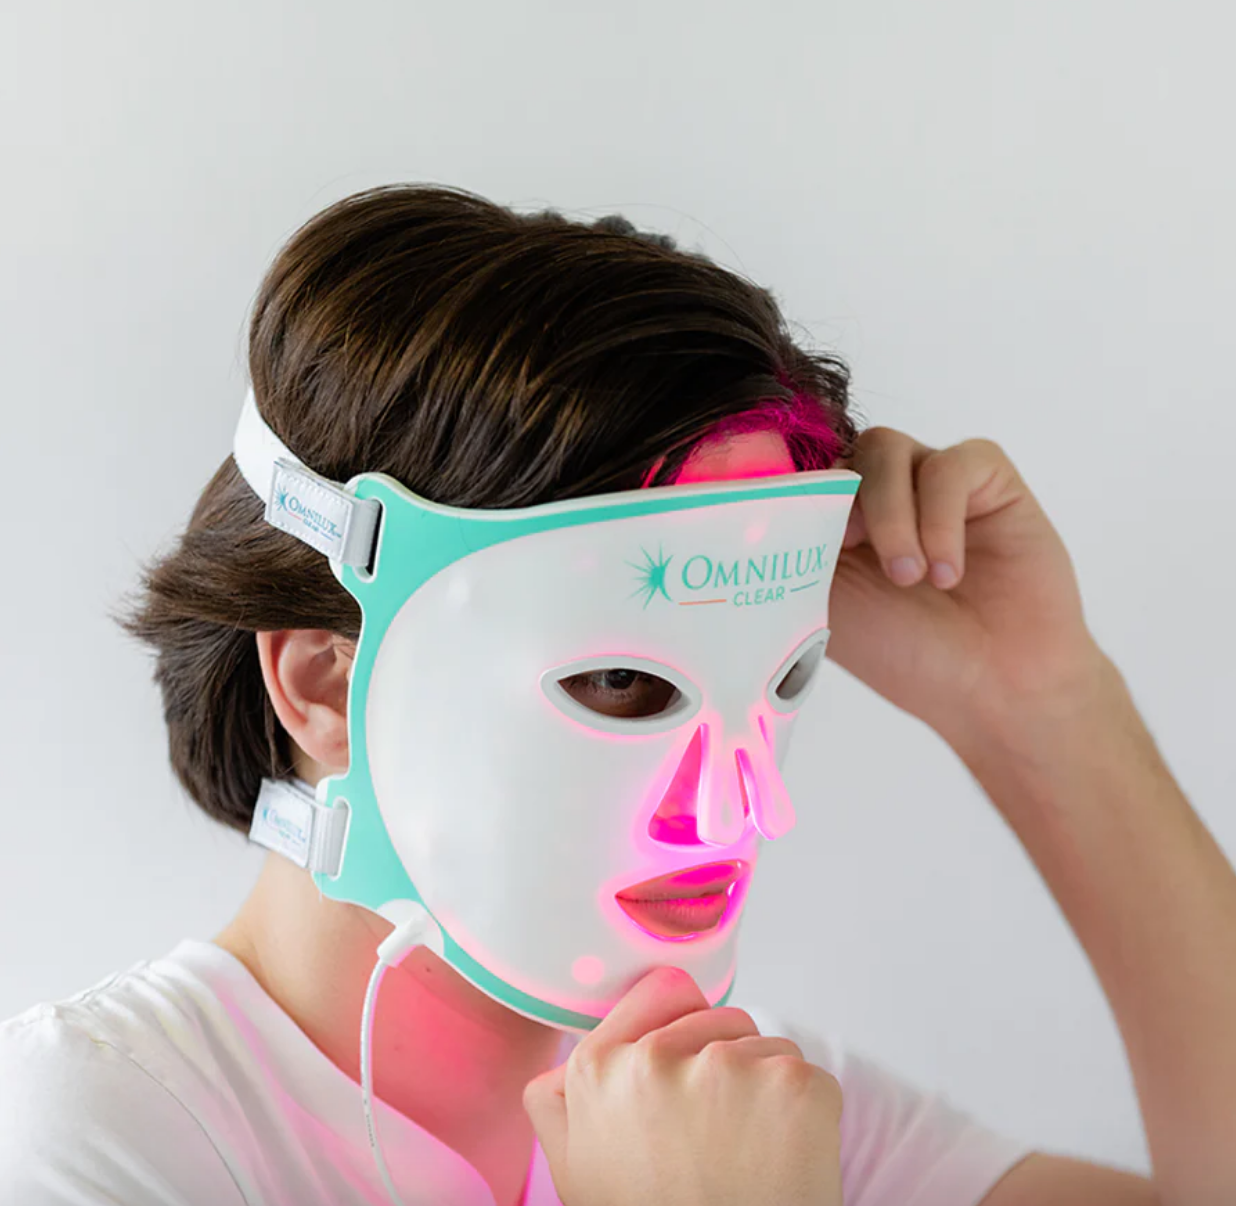 Omnilux Acne LED Face Mask